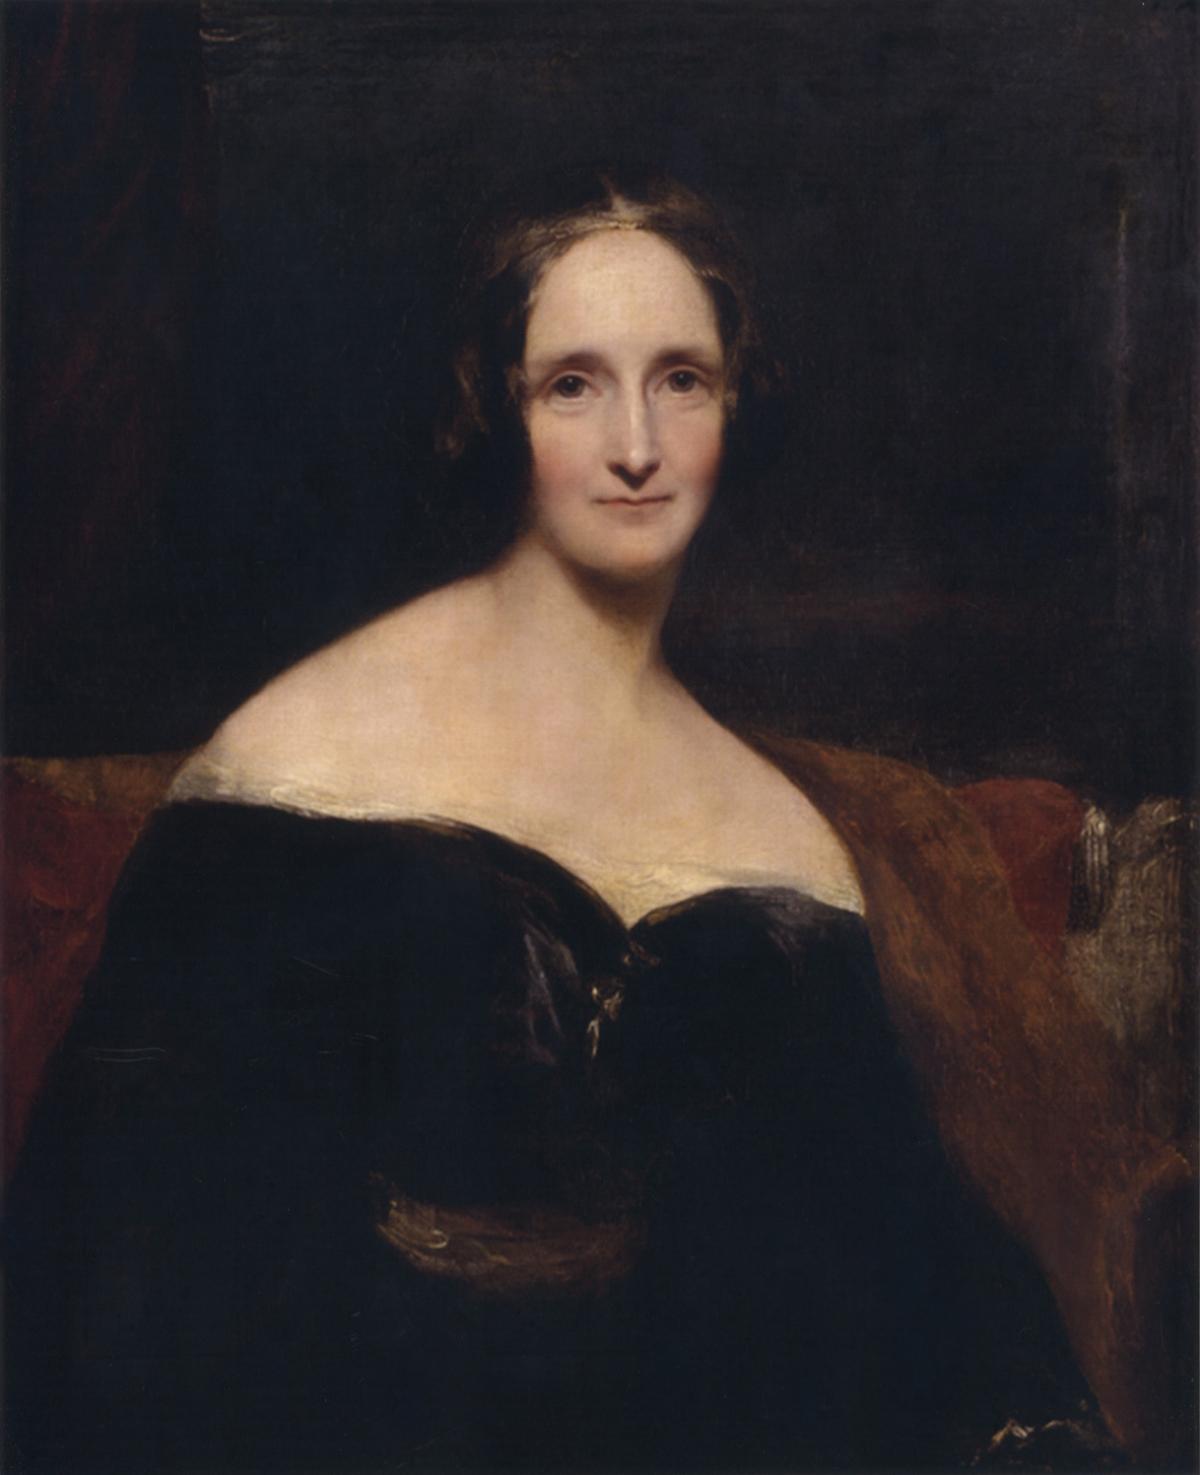 34 - Mary Shelley